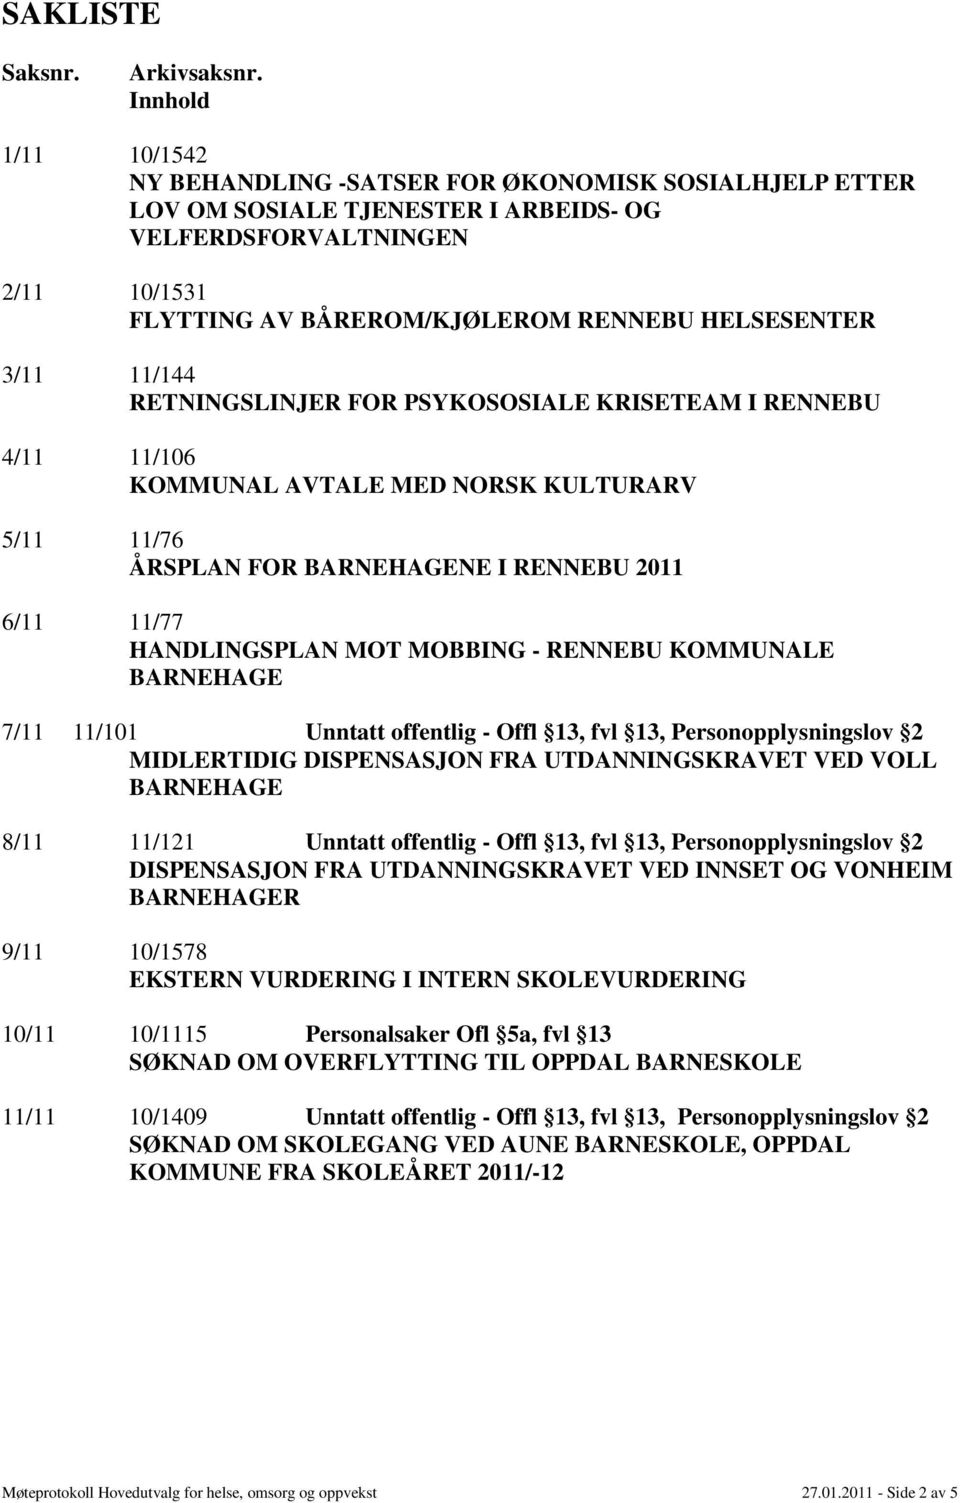 3/11 11/144 RETNINGSLINJER FOR PSYKOSOSIALE KRISETEAM I RENNEBU 4/11 11/106 KOMMUNAL AVTALE MED NORSK KULTURARV 5/11 11/76 ÅRSPLAN FOR NE I RENNEBU 2011 6/11 11/77 HANDLINGSPLAN MOT MOBBING - RENNEBU